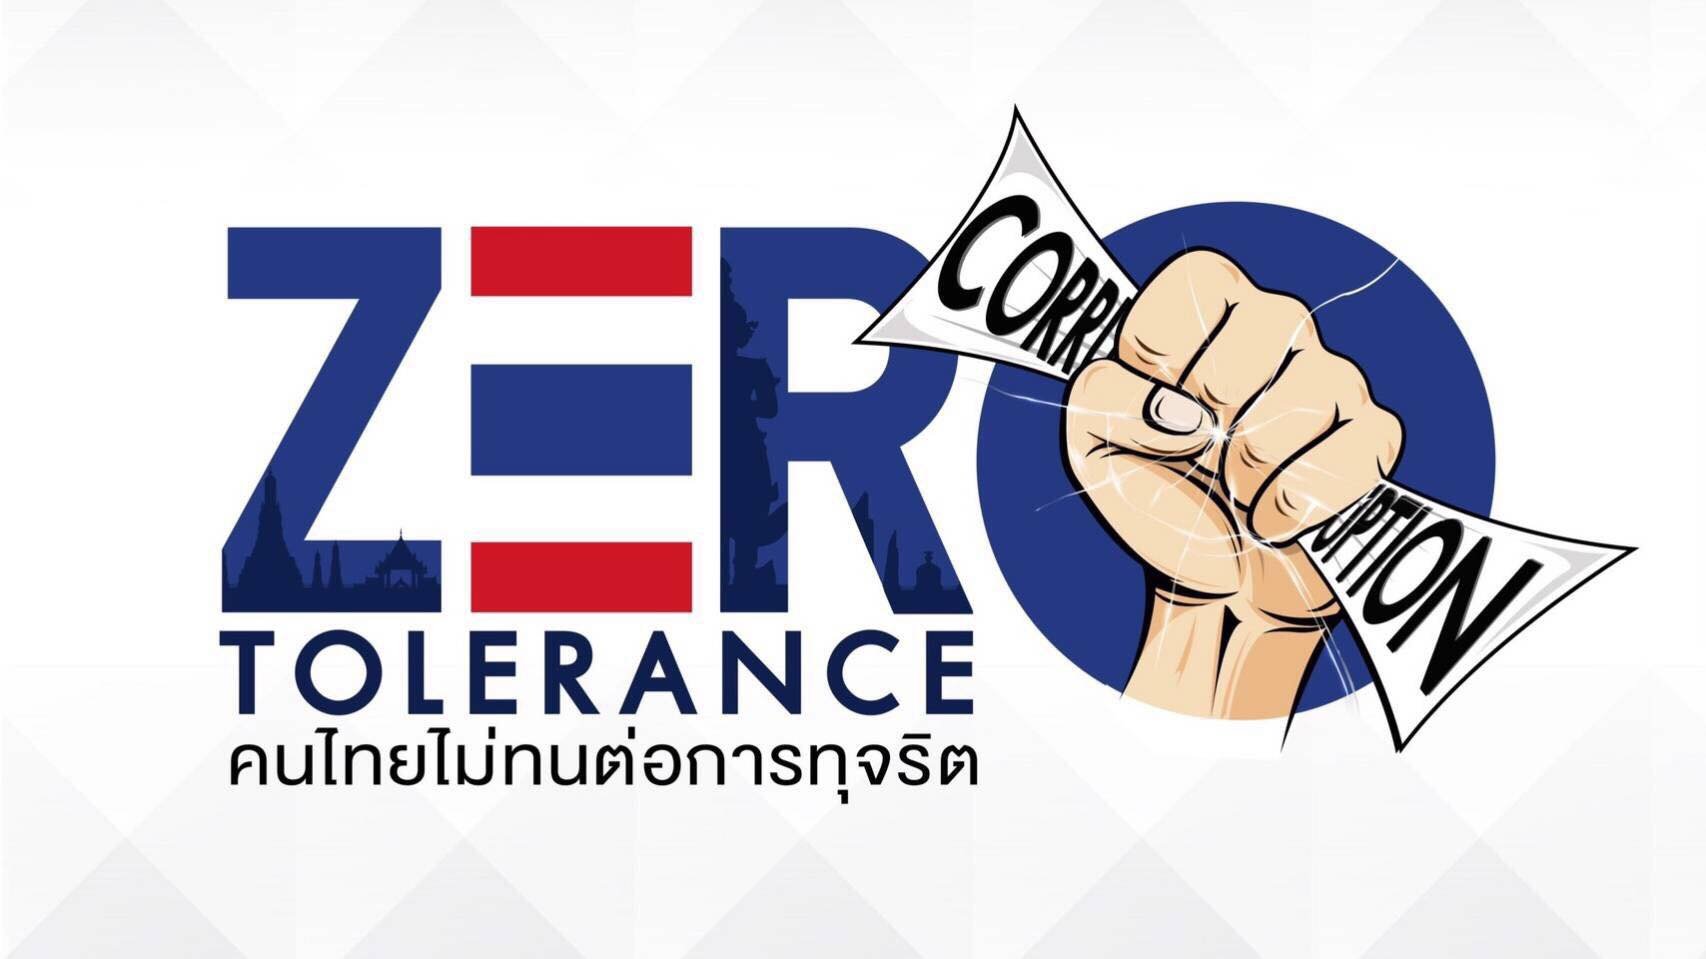 รายการ “คนไทยไม่ทนต่อการทุจริต” วันอาทิตย์ที่ 3 มิถุนายน 2561 เวลา 18.30-1900 น.